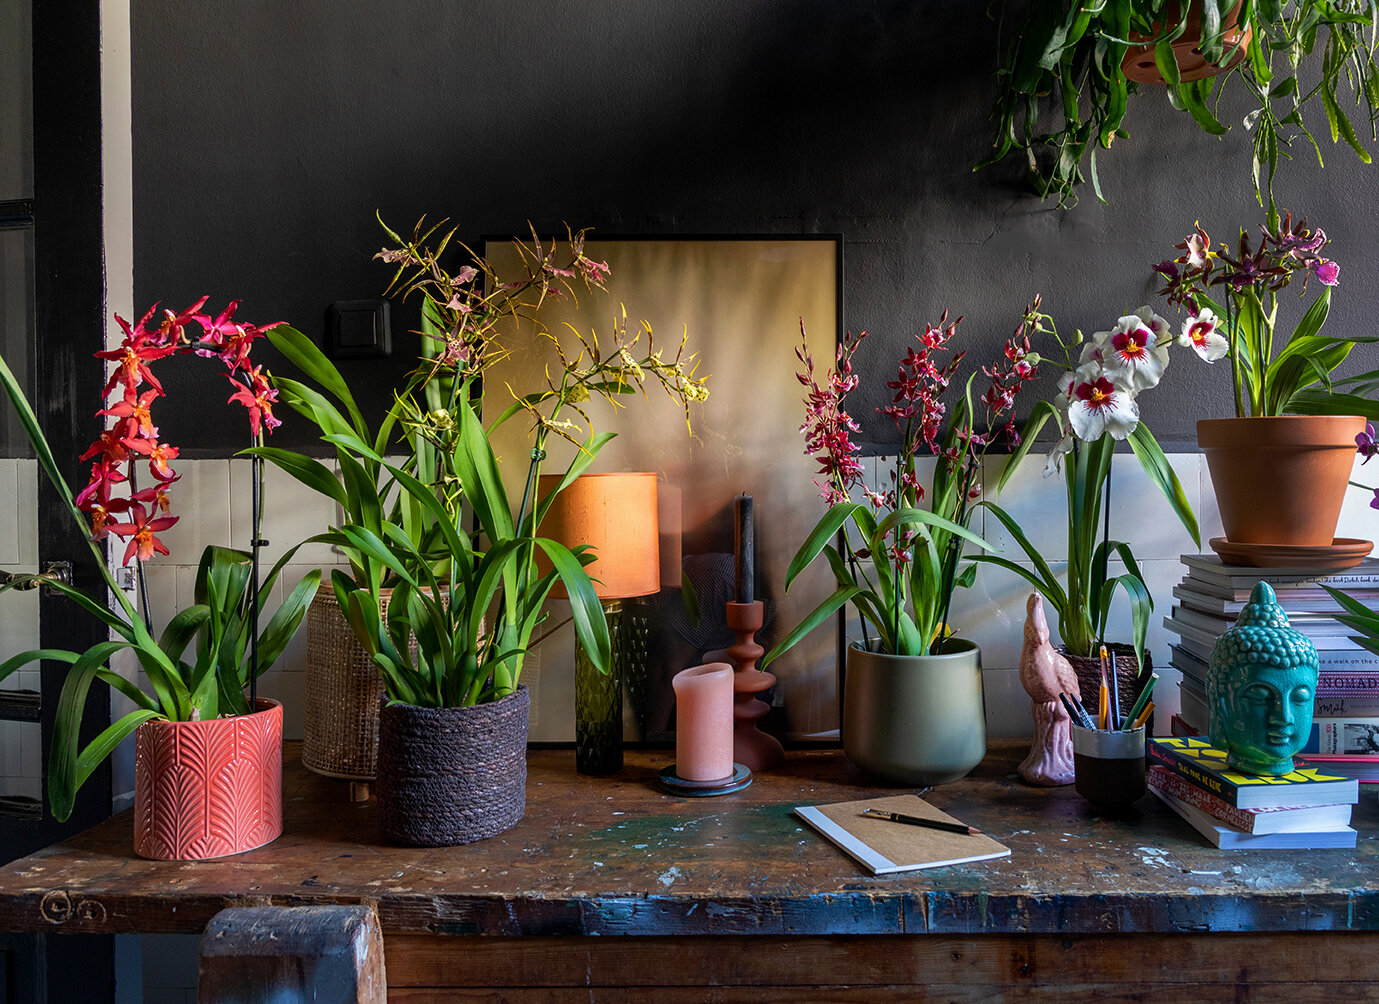 Kleurrijke orchideeën als een groene jungle huis — THE NICE STUFF COLLECTOR